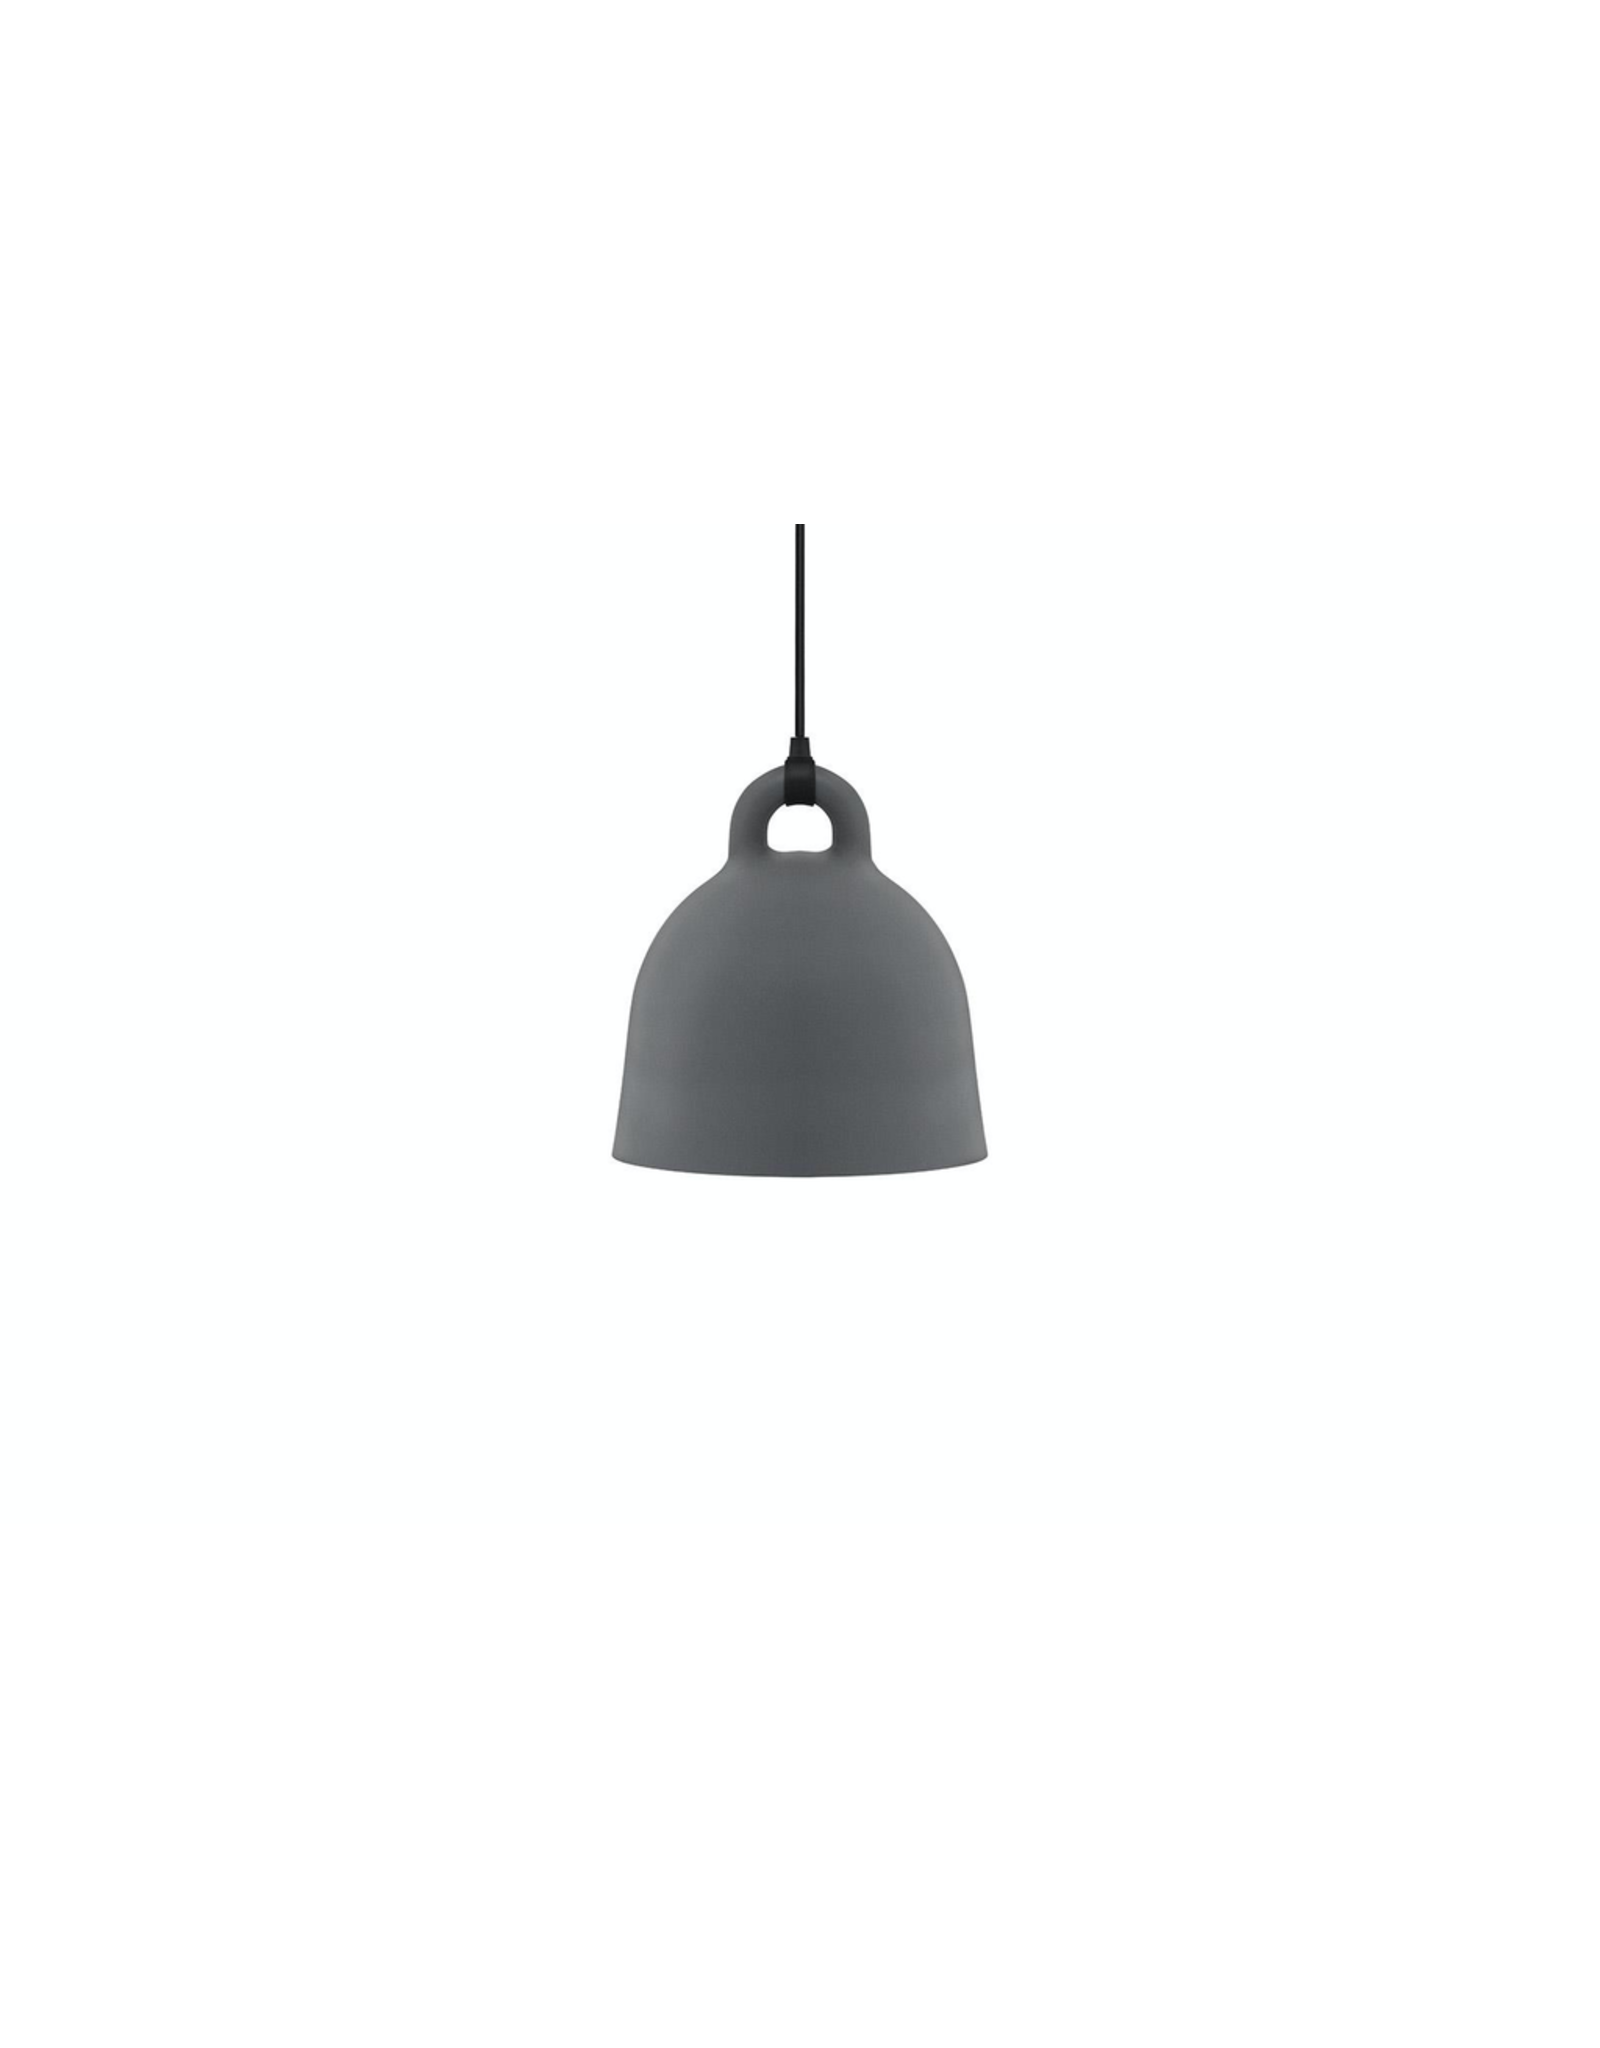 Normann Copenhagen Bell Lamp Small grey D35cm